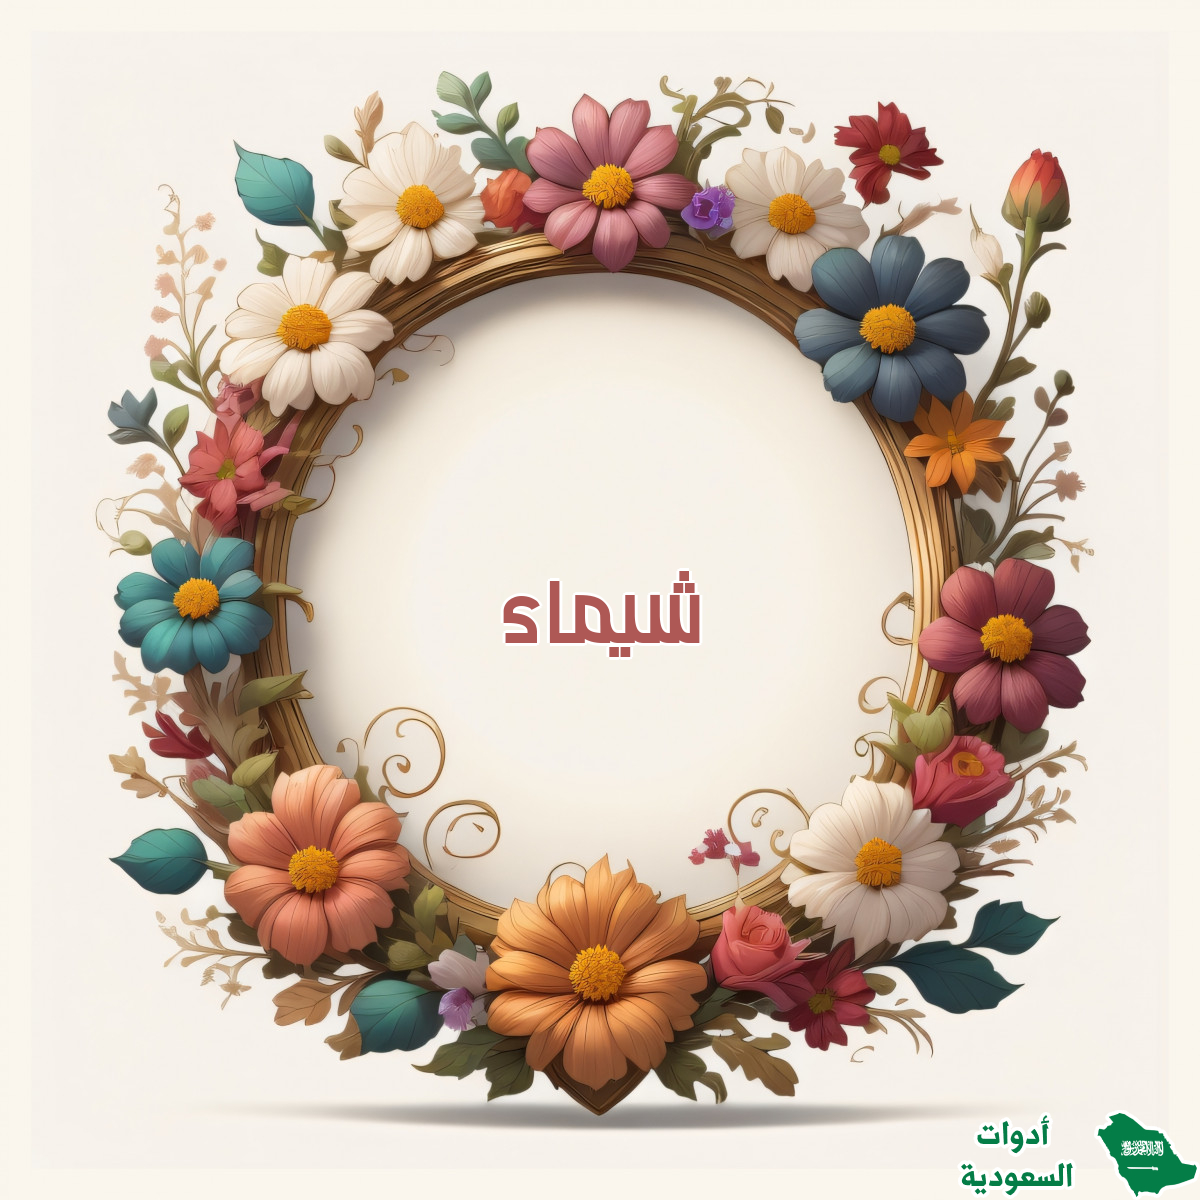 اسم شيماء على صورة ضمن خدمة كتابة اسم داخل إطار من الزهور